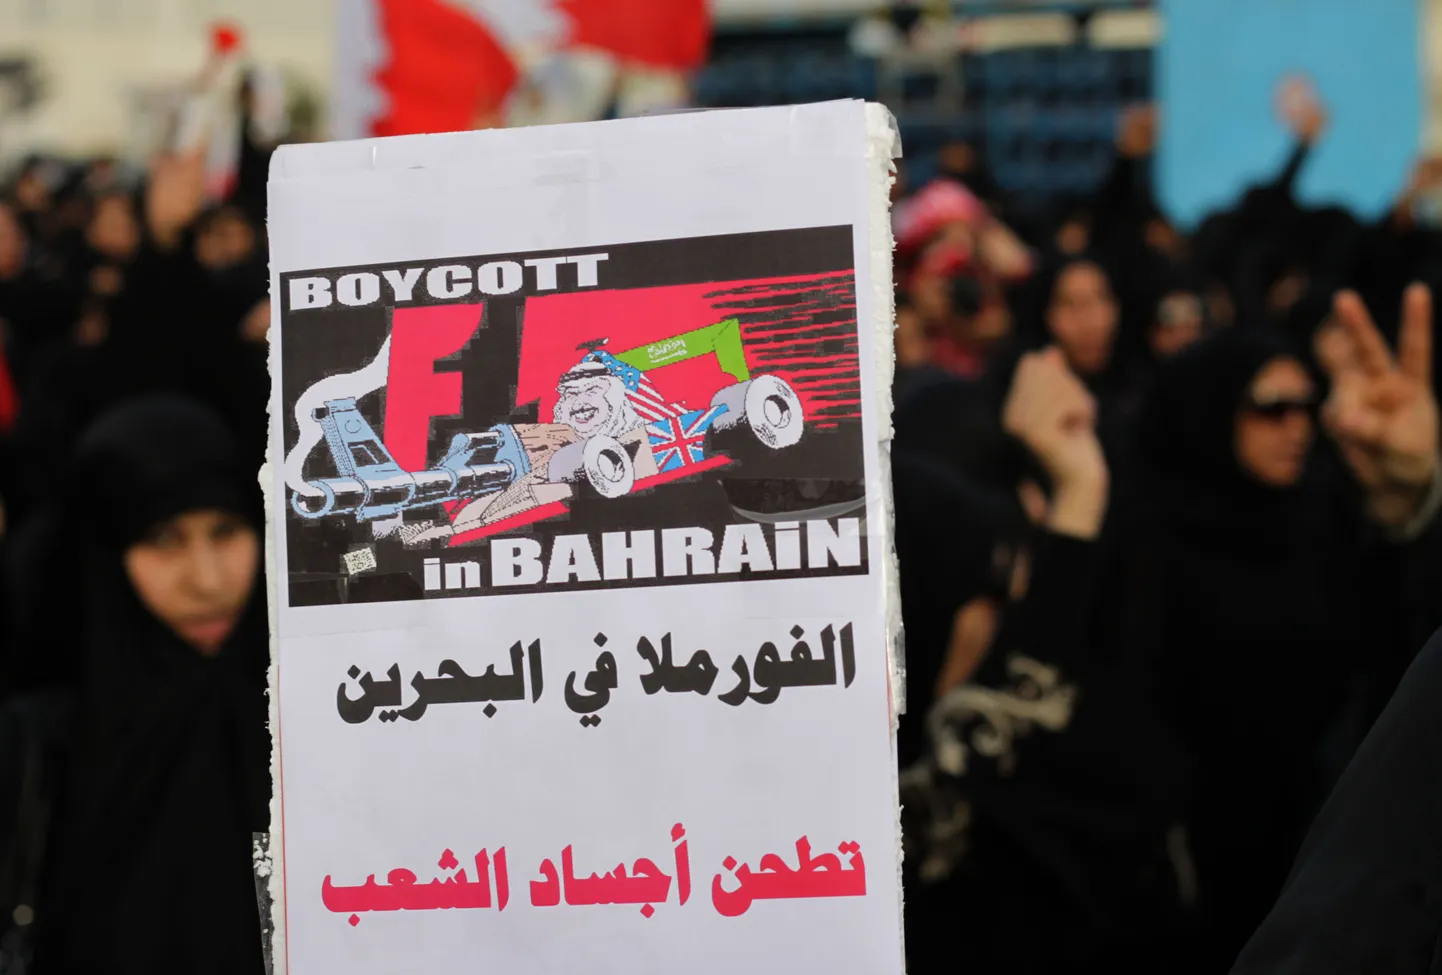 Protestijad on veendunud, et Bahreini etapp ei tohiks ka tänavu toimuda.